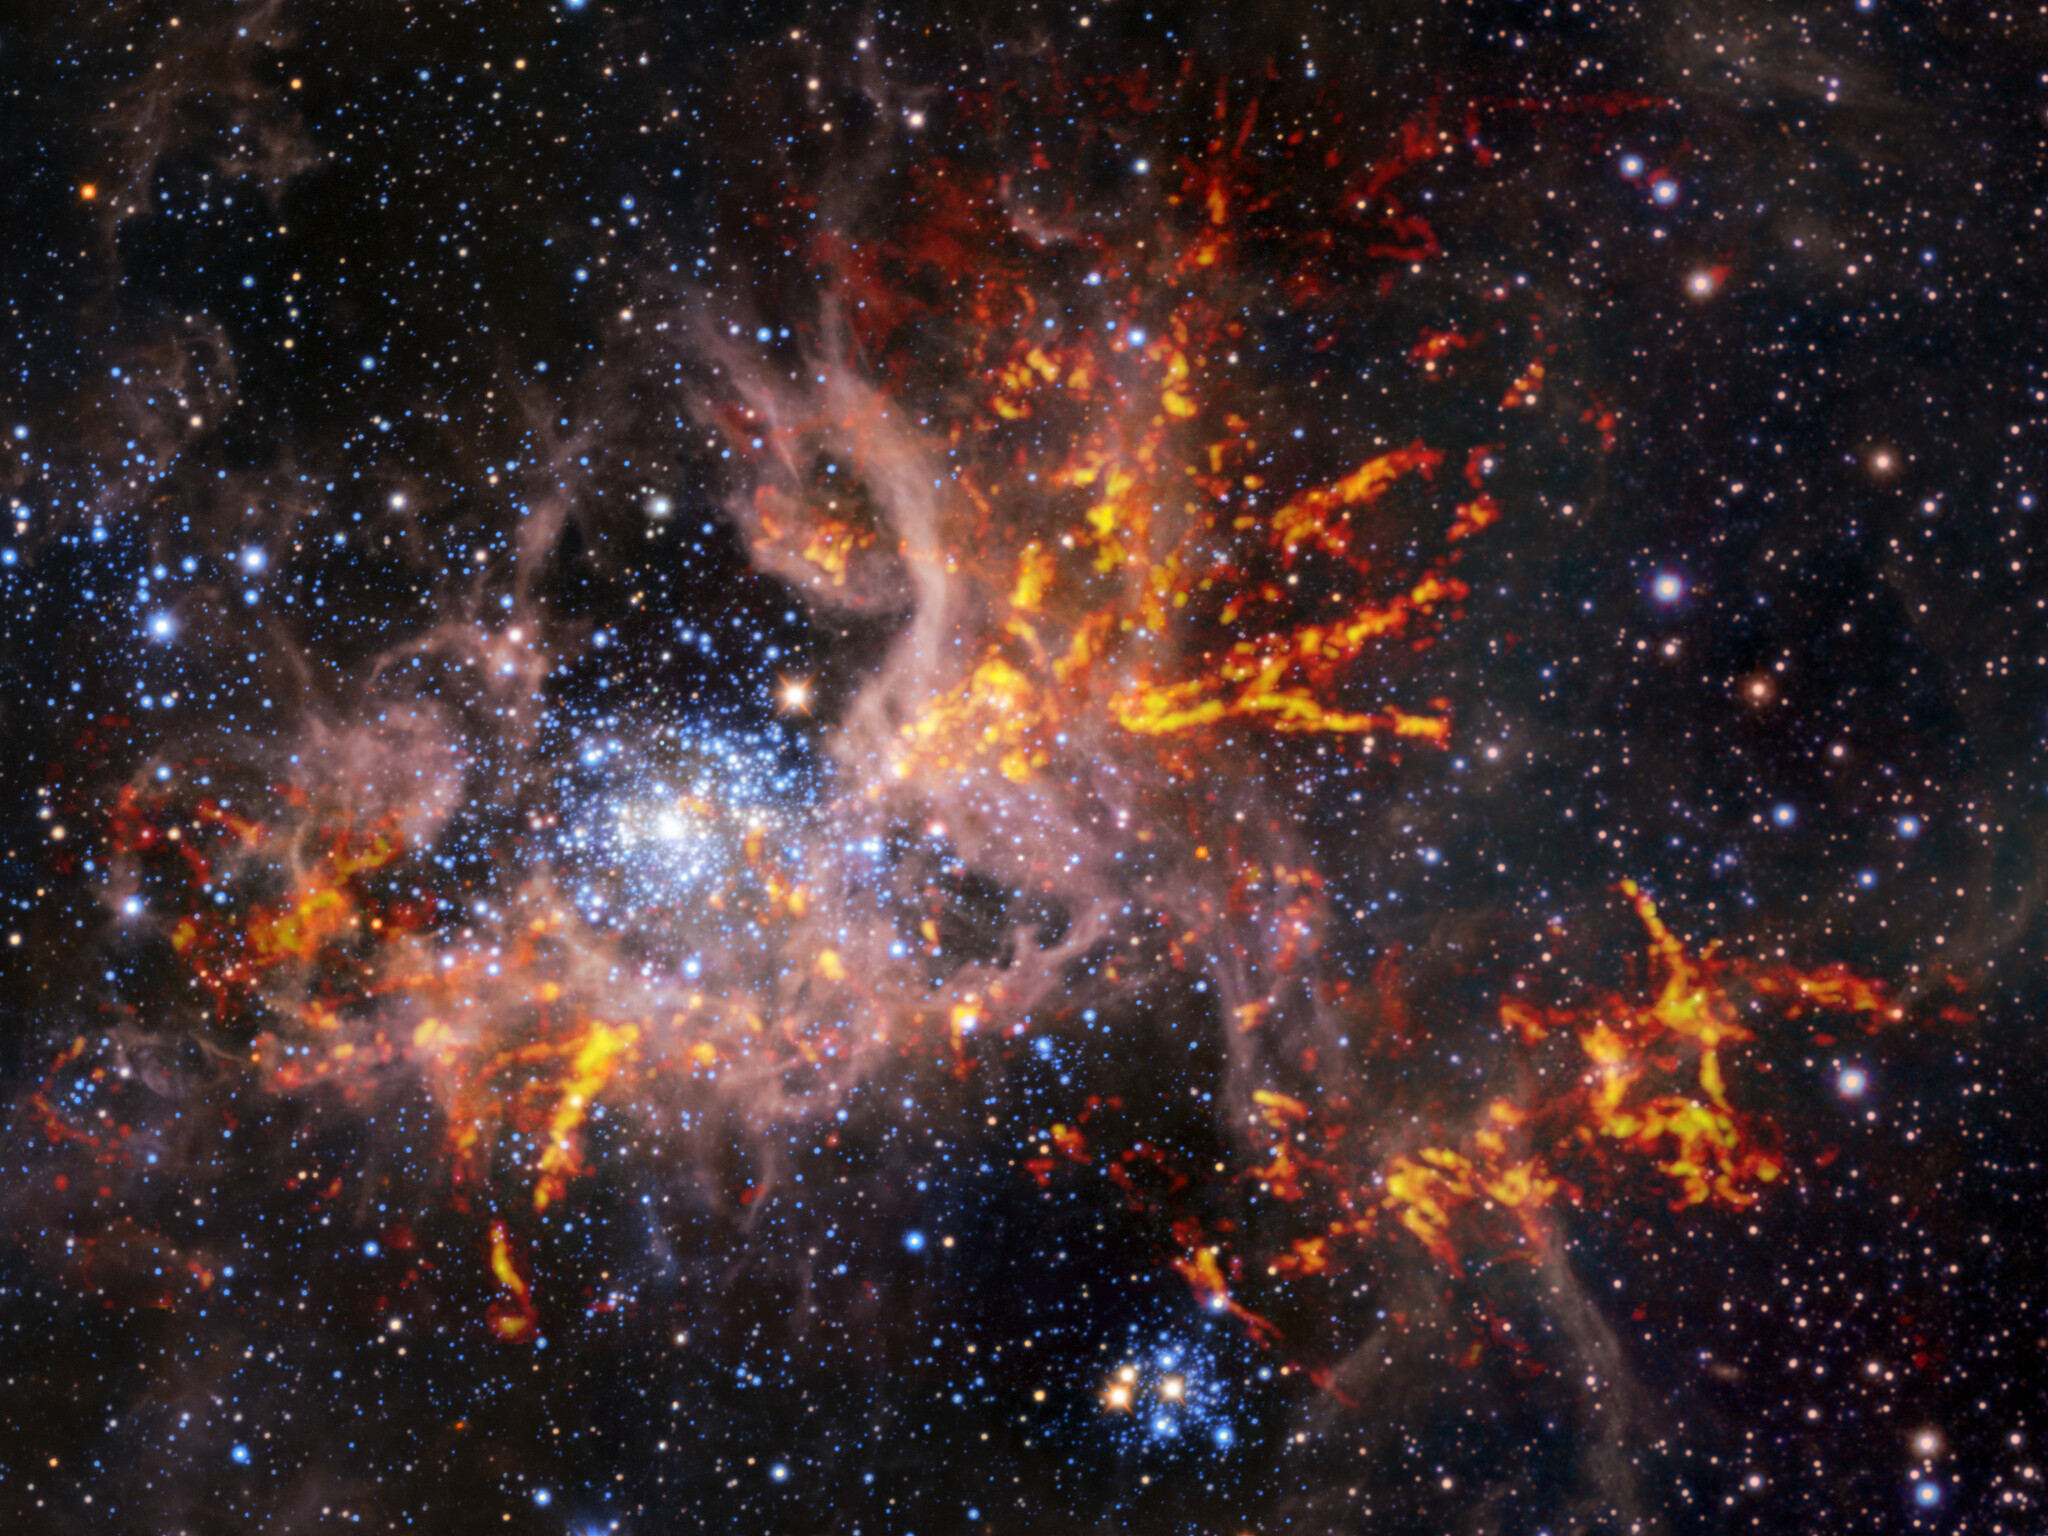 Cette image composite montre la région de formation d’étoiles&nbsp;30 Doradus, également connue sous le nom de nébuleuse de la Tarentule. L’image de fond, prise dans l’infrarouge, est elle-même une image composite : elle a été capturée par les instruments HAWK-I sur le VLT&nbsp;et Vista&nbsp;de l’ESO. Elle montre des étoiles brillantes et des nuages légers et rosés de gaz chaud. Les bandes rouge-jaune brillantes qui ont été superposées à l’image proviennent d’observations radio effectuées par Alma, révélant des régions de gaz froid et dense qui ont le potentiel de s’effondrer et de former des étoiles. La structure unique en forme de toile des nuages de gaz de cette nébuleuse a conduit les astronomes à lui donner comme surnom le nom d’une araignée. © ESO, Alma (ESO/NAOJ/NRAO)/Wong et al., ESO/M.-R. Cioni/Vista Magellanic Cloud survey. Acknowledgment: Cambridge Astronomical Survey Unit